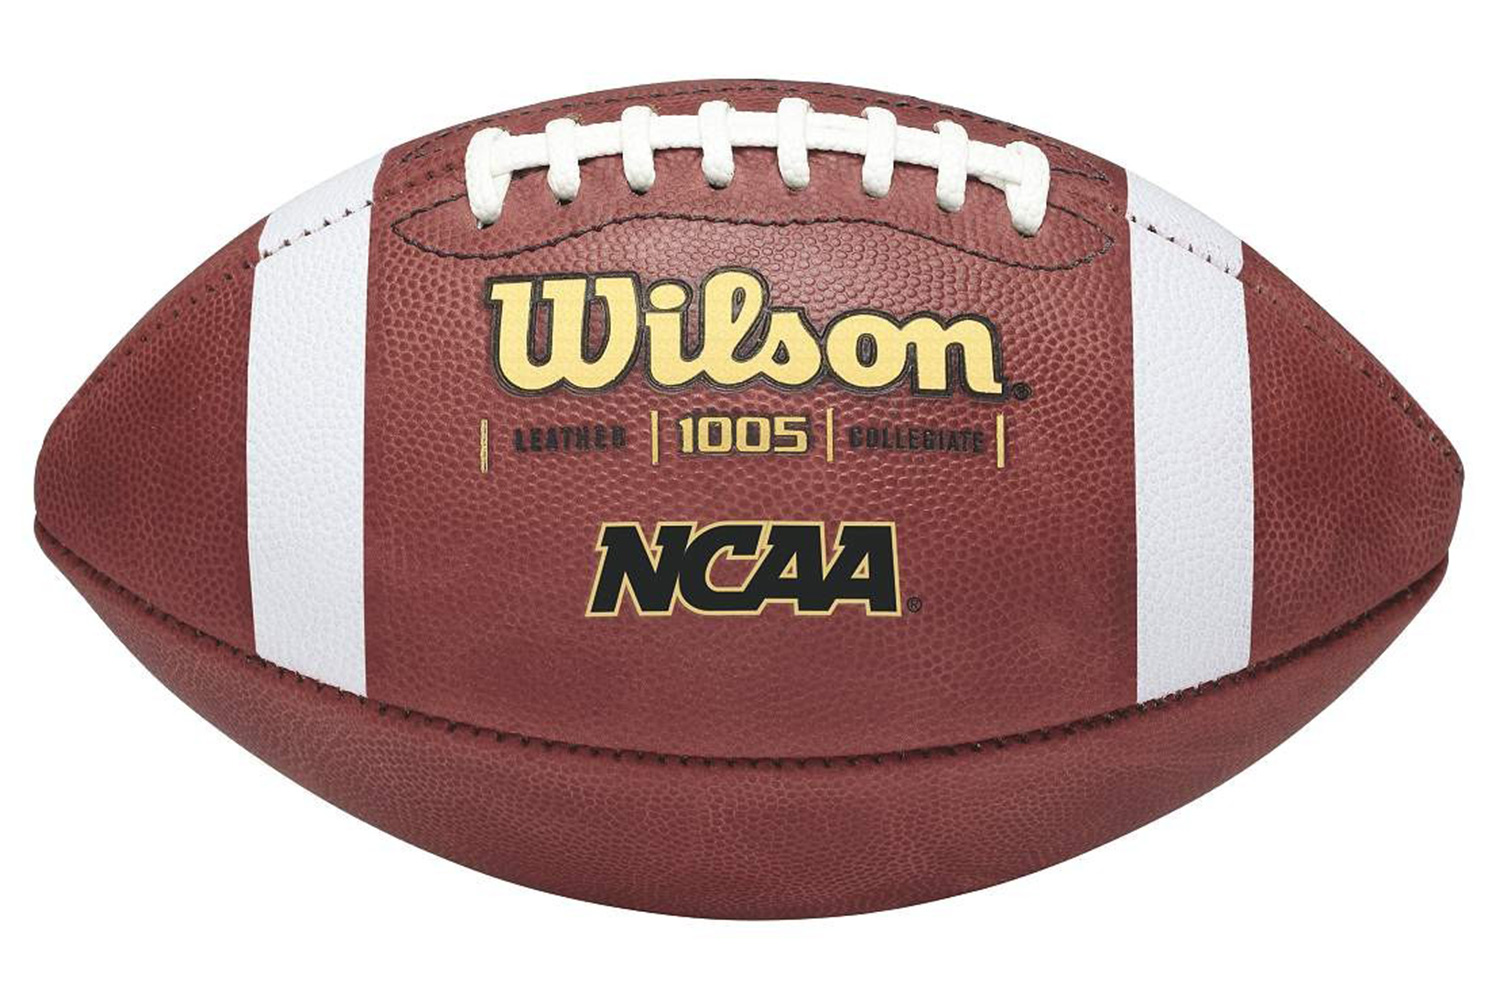 Купить американского футбола. Мяч Wilson NFL. Вилсон мяч регбийный. Мяч для регби Wilson. Мяч для регби Wilson NFL.